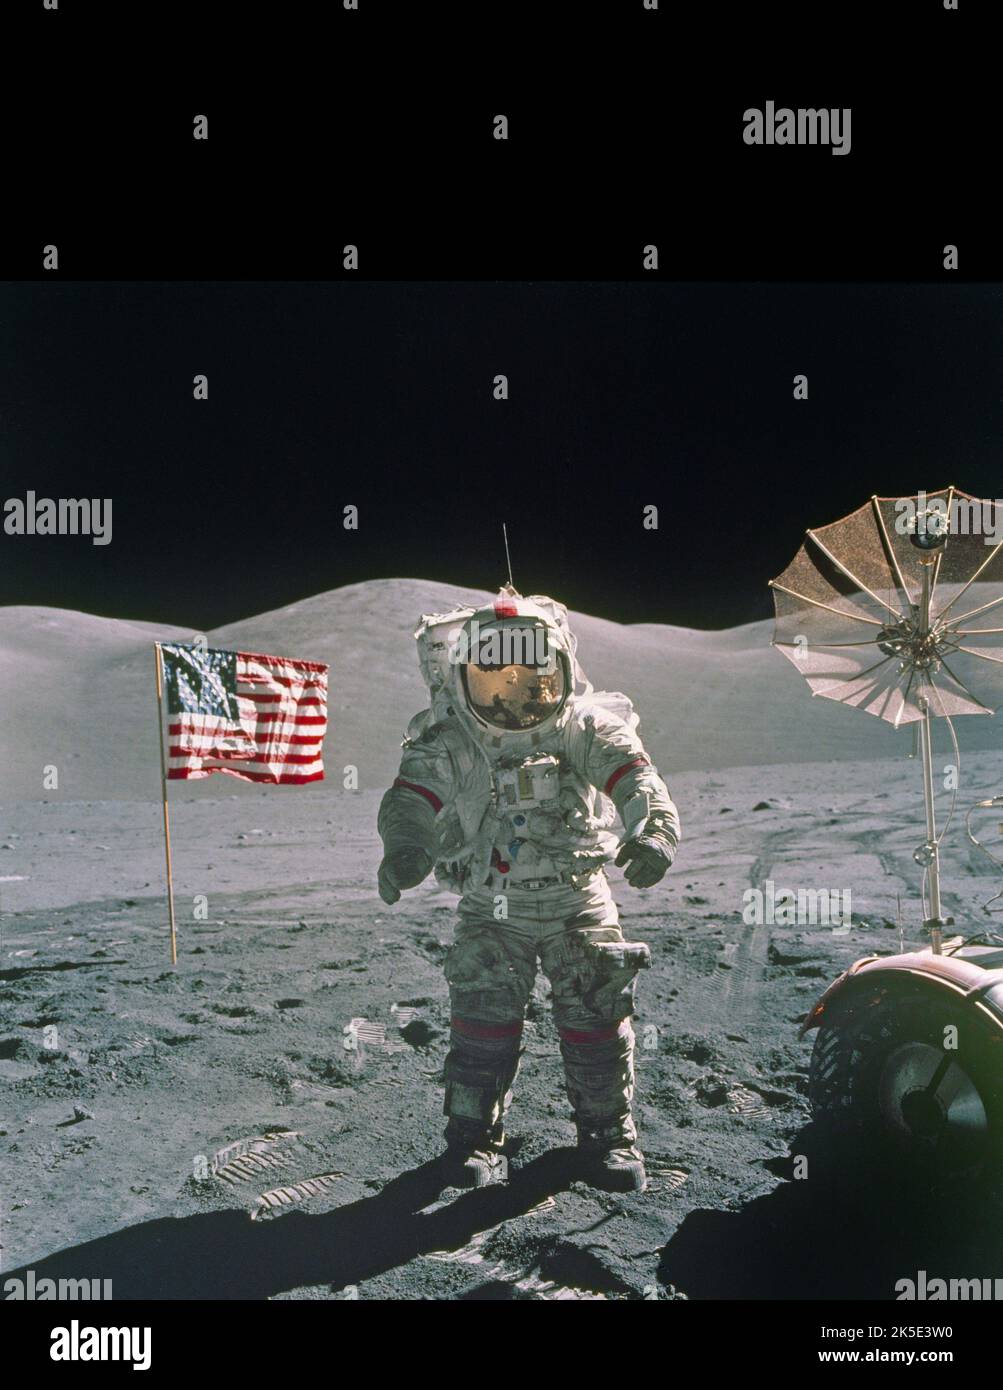 Apollo 17 a marqué l'expédition finale du programme vers la lune. Départ après minuit le 7 décembre 1972 du Centre spatial Kennedy et contact sur la surface lunaire le 11 décembre. L'équipage a passé près de 75 heures sur la surface lunaire, a effectué près de 22 heures d'activités extravéhiculaires (EVAS) et a parcouru près de 19 miles dans le véhicule de la route lunaire (LRV). Cette photo, prise lors de la deuxième EVA le 12 décembre 1972, montre Astronaut Gene Cernan debout près du LRV. Une image optimisée unique de la NASA (avec un espace vertical noir ajouté au-dessus de l'image carrée originale; suppression du réticule): Crédit: NASA Banque D'Images